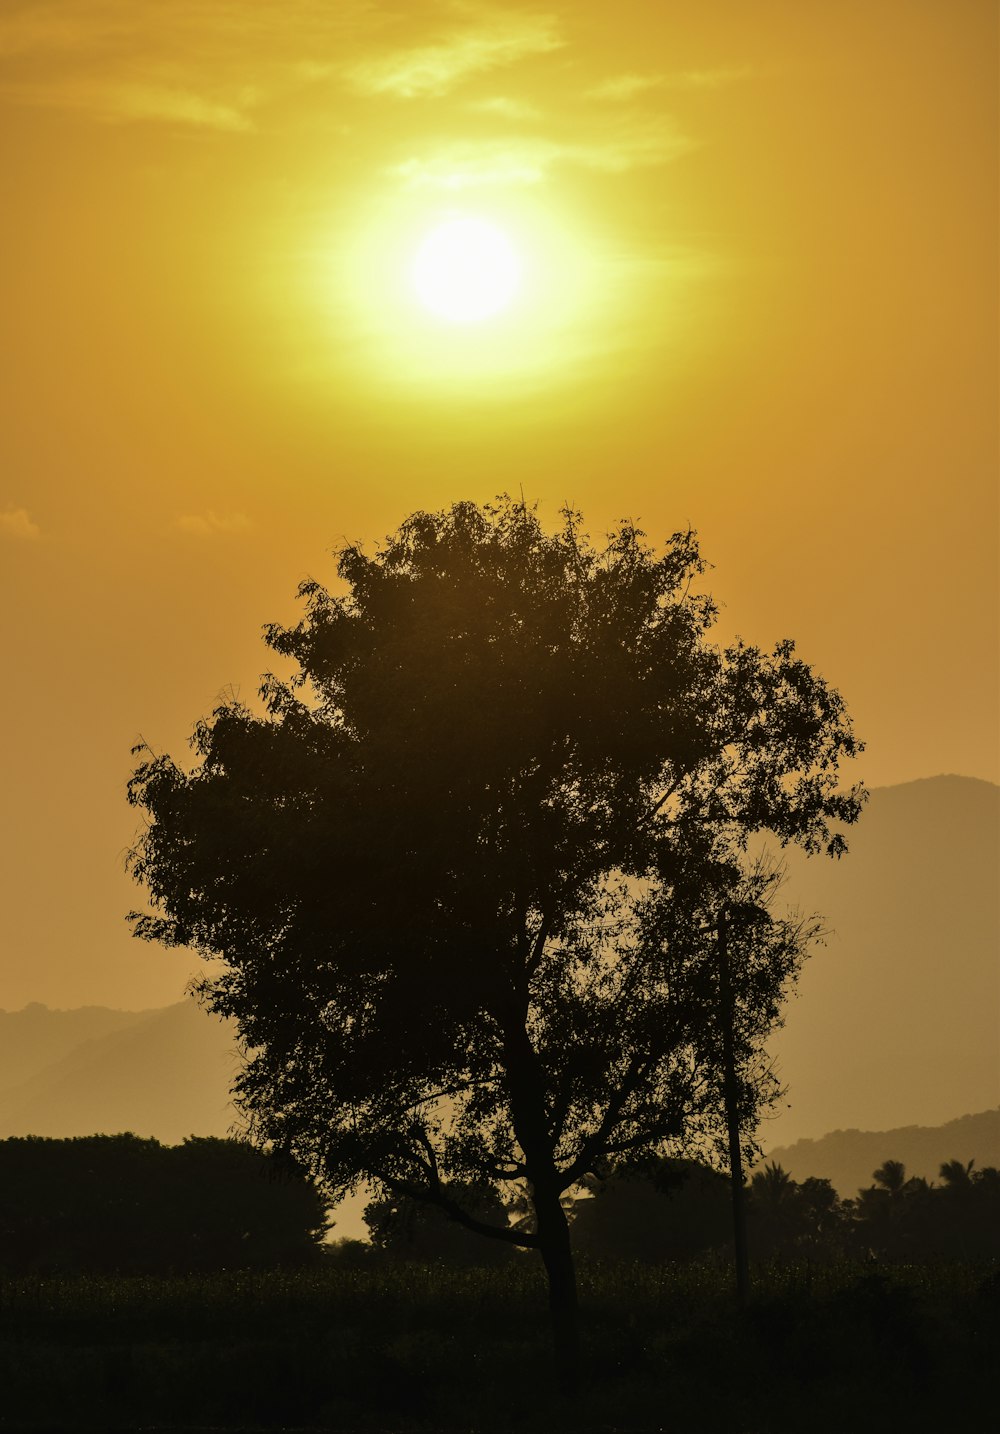 Un árbol solitario se recorta contra el sol poniente